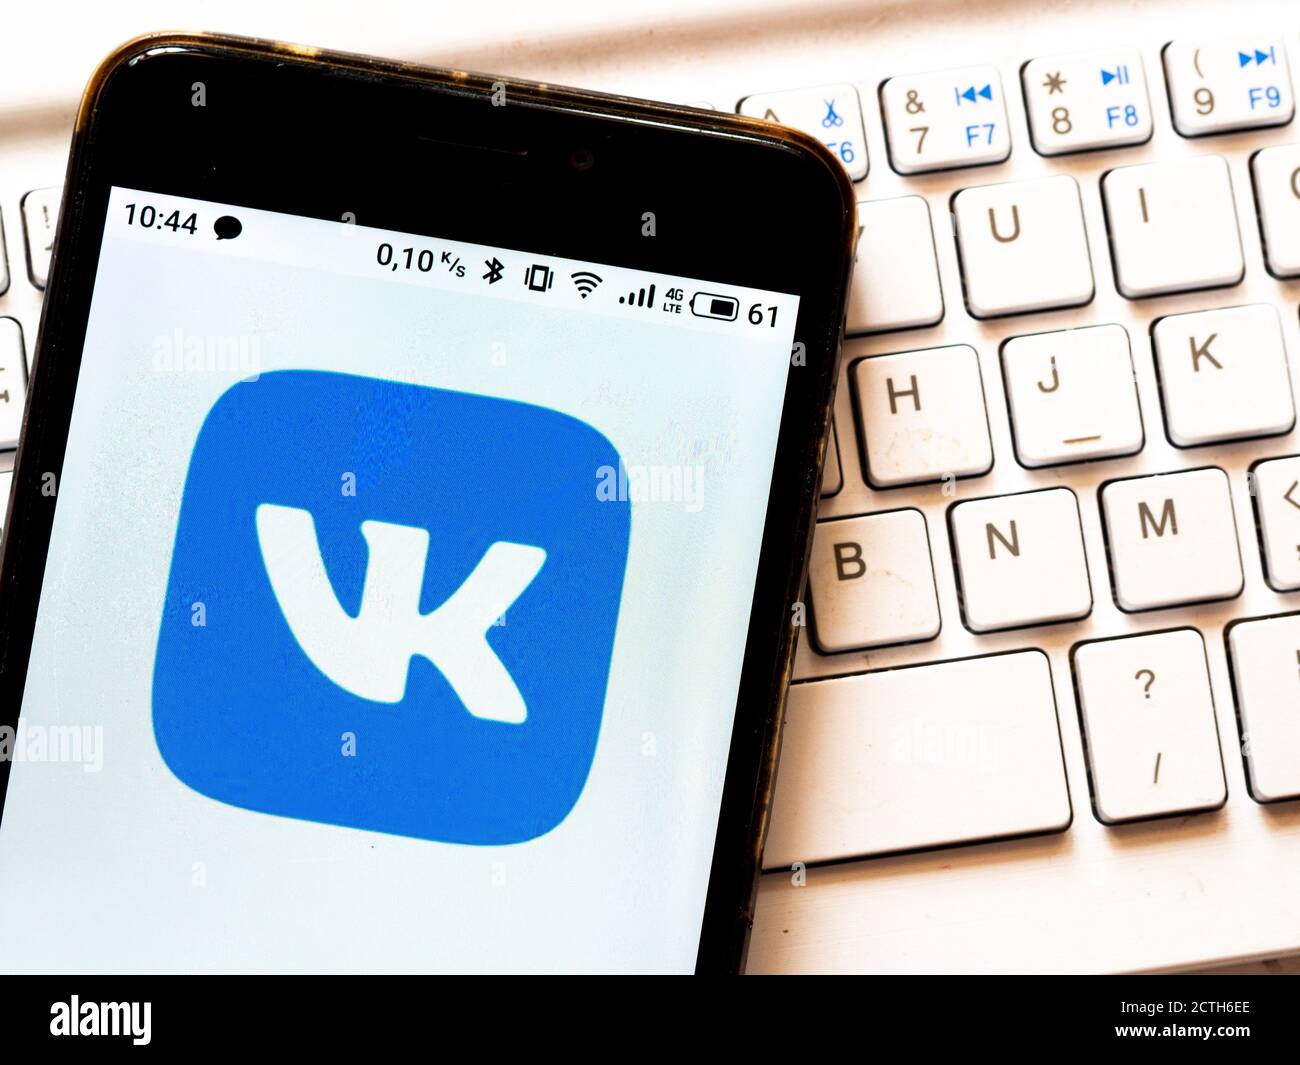 📱 ¿Qué es Vkontakte y para qué sirve?